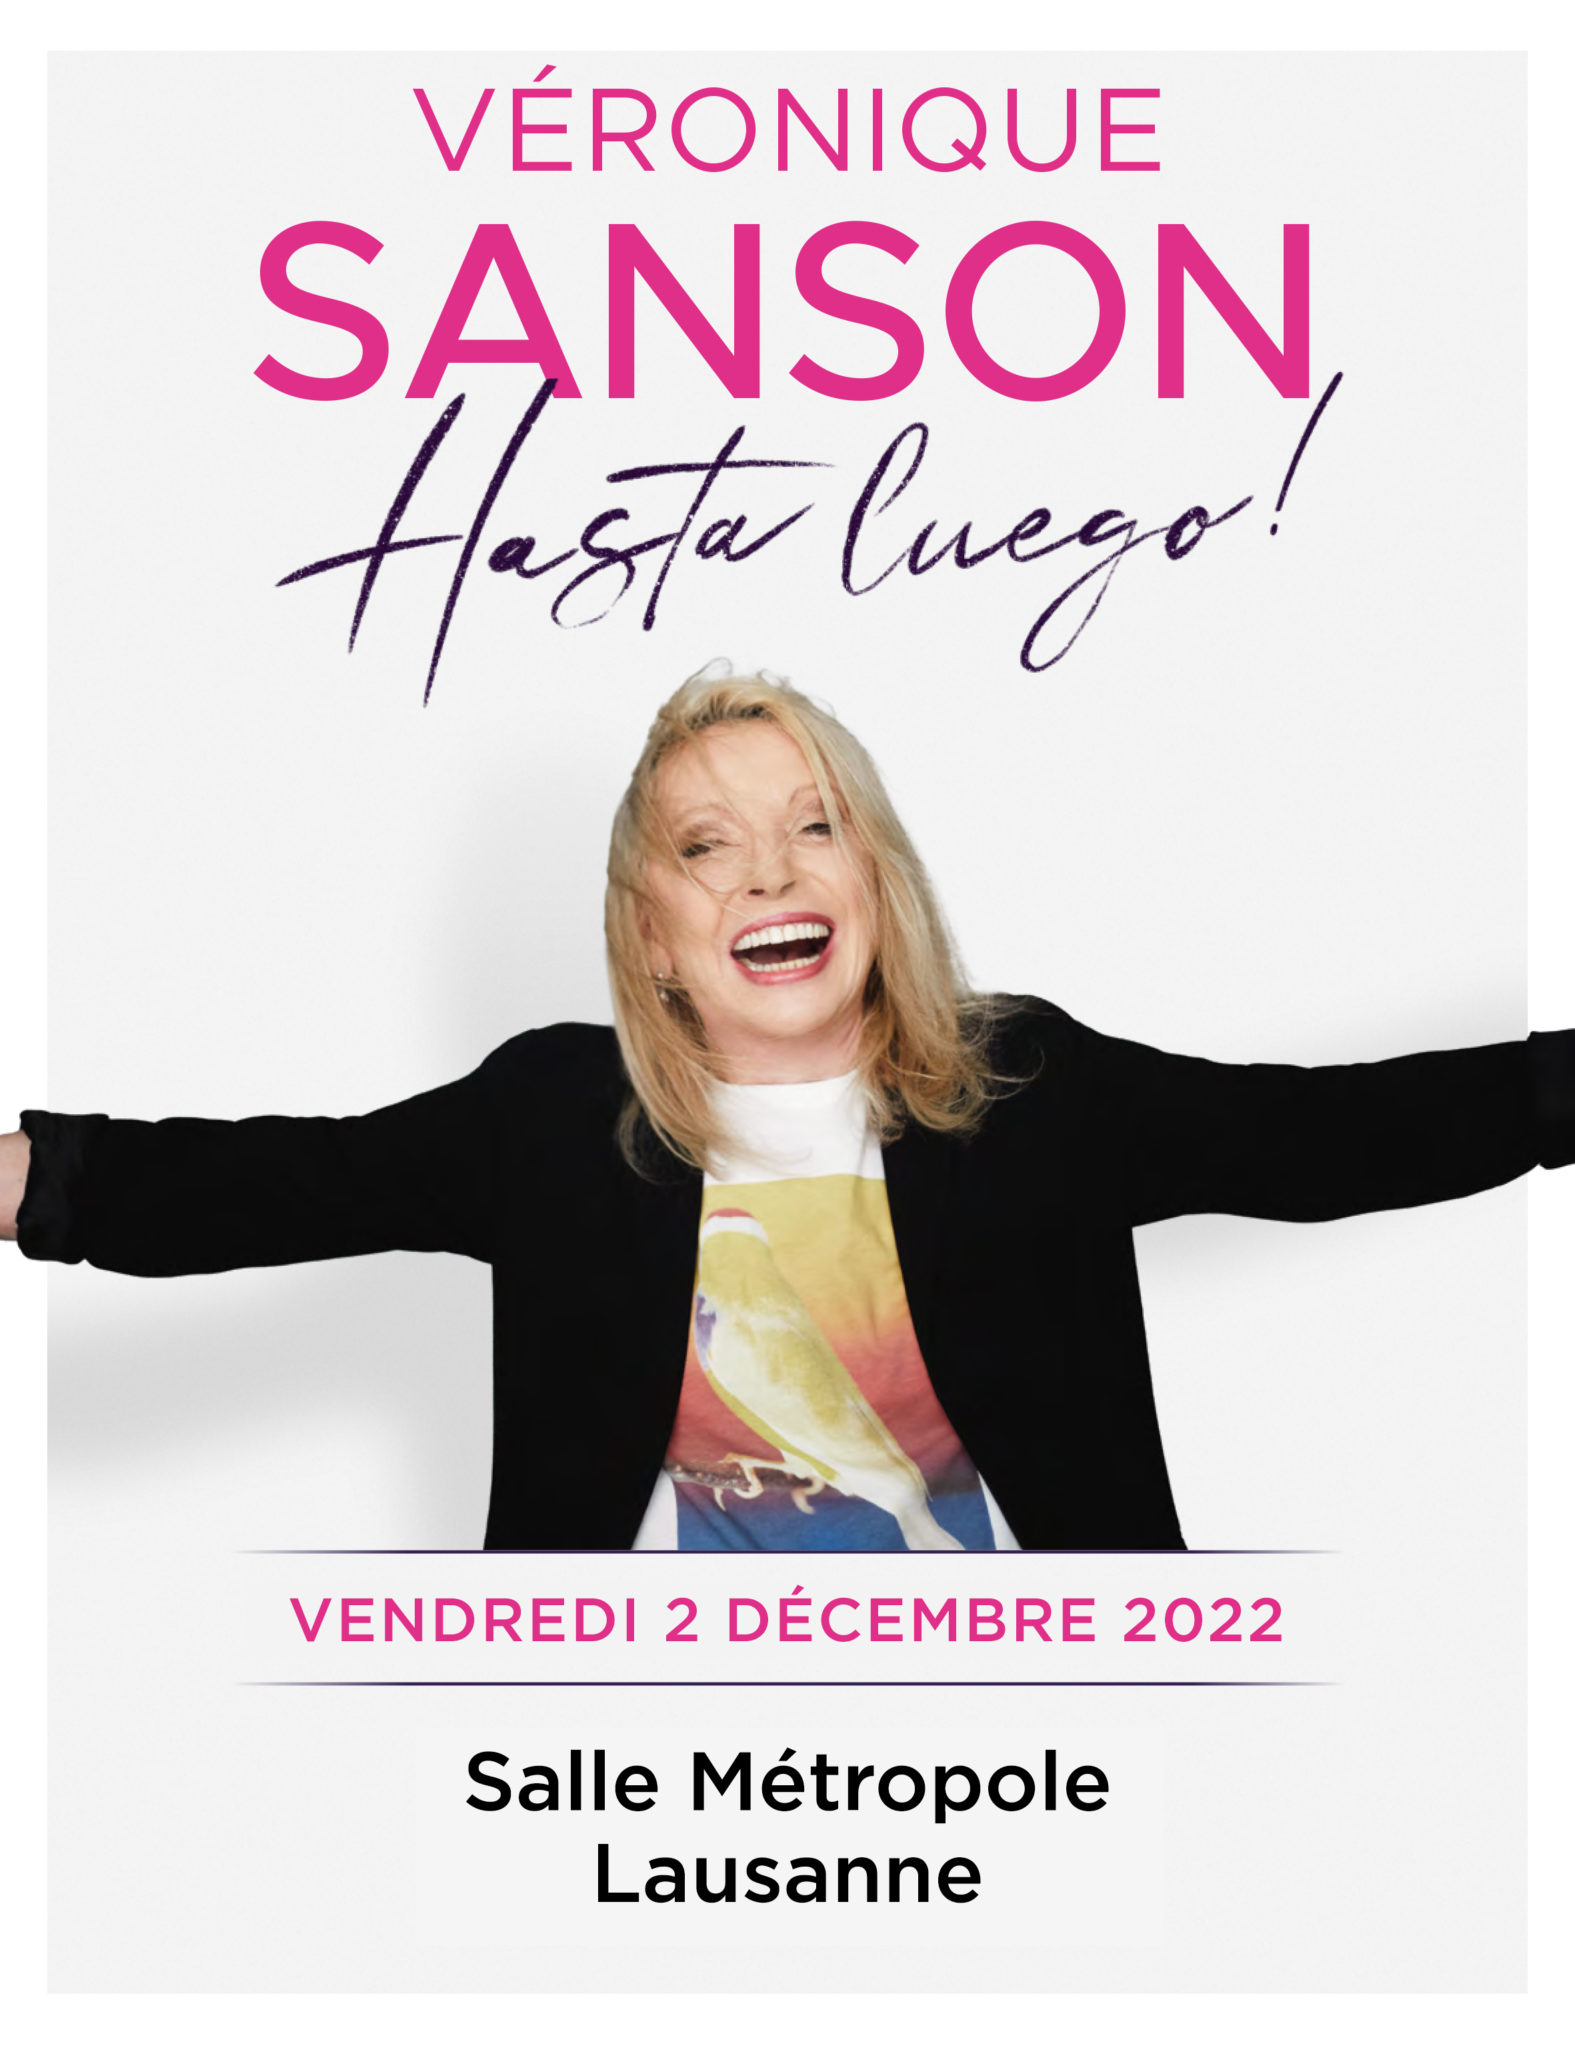 en concert à Lausanne Véronique Sanson